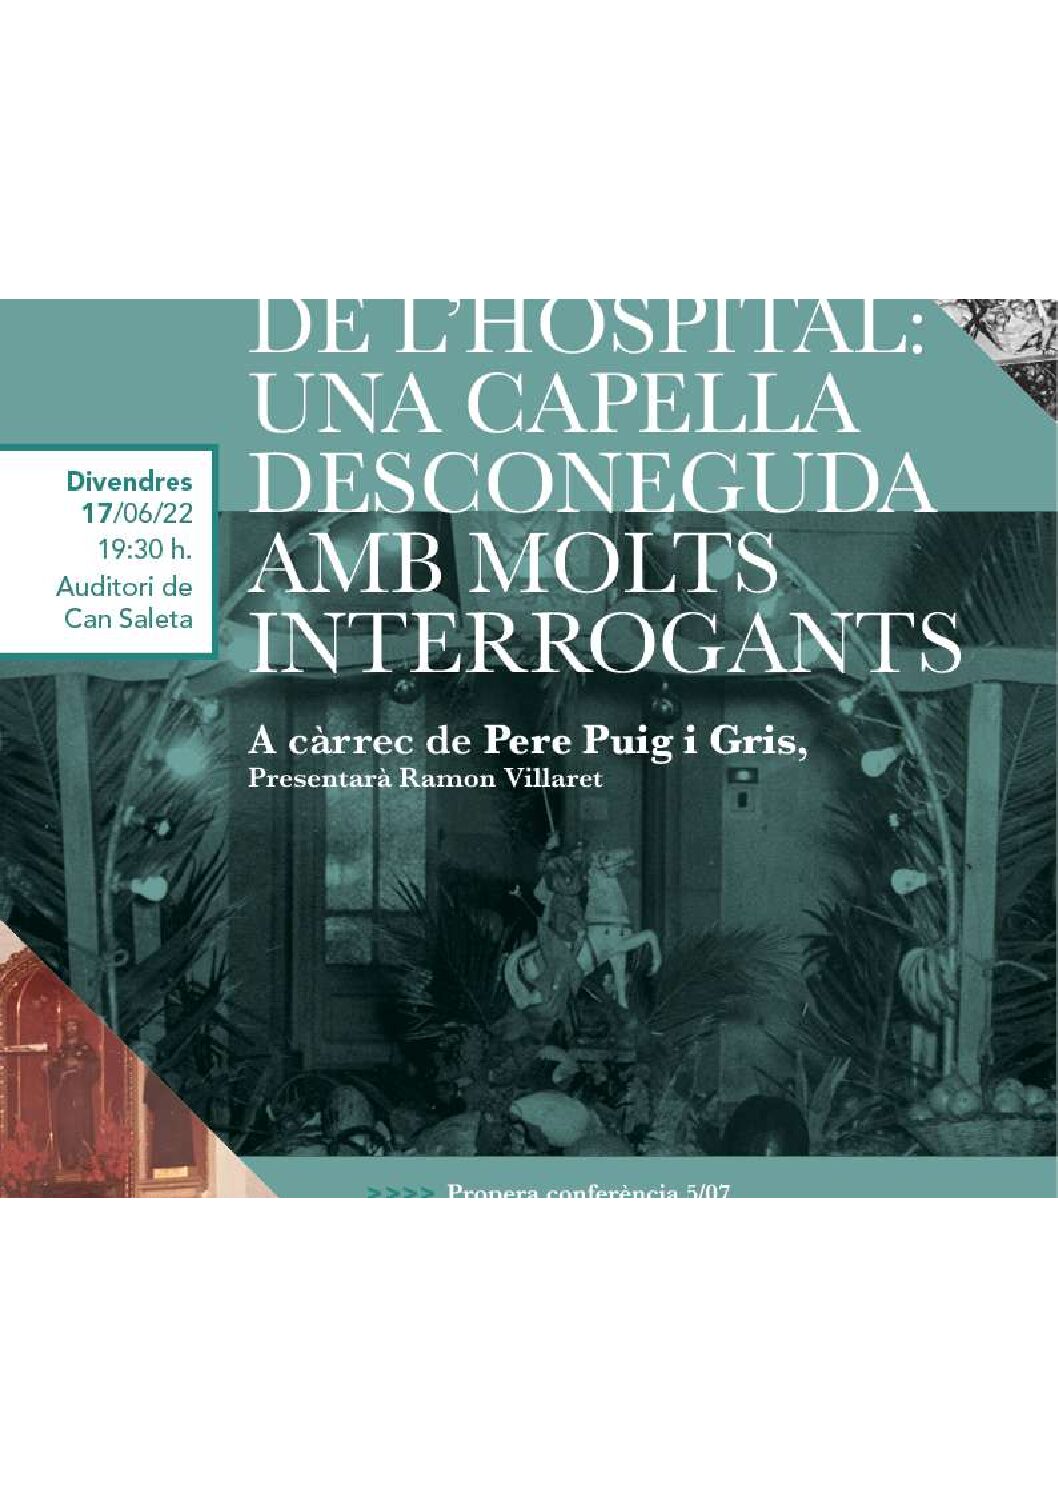 Conferència “Sant Jaume de l’hospital: Una capella desconeguda amb molts interrogants”, per Pere Puig i Gris